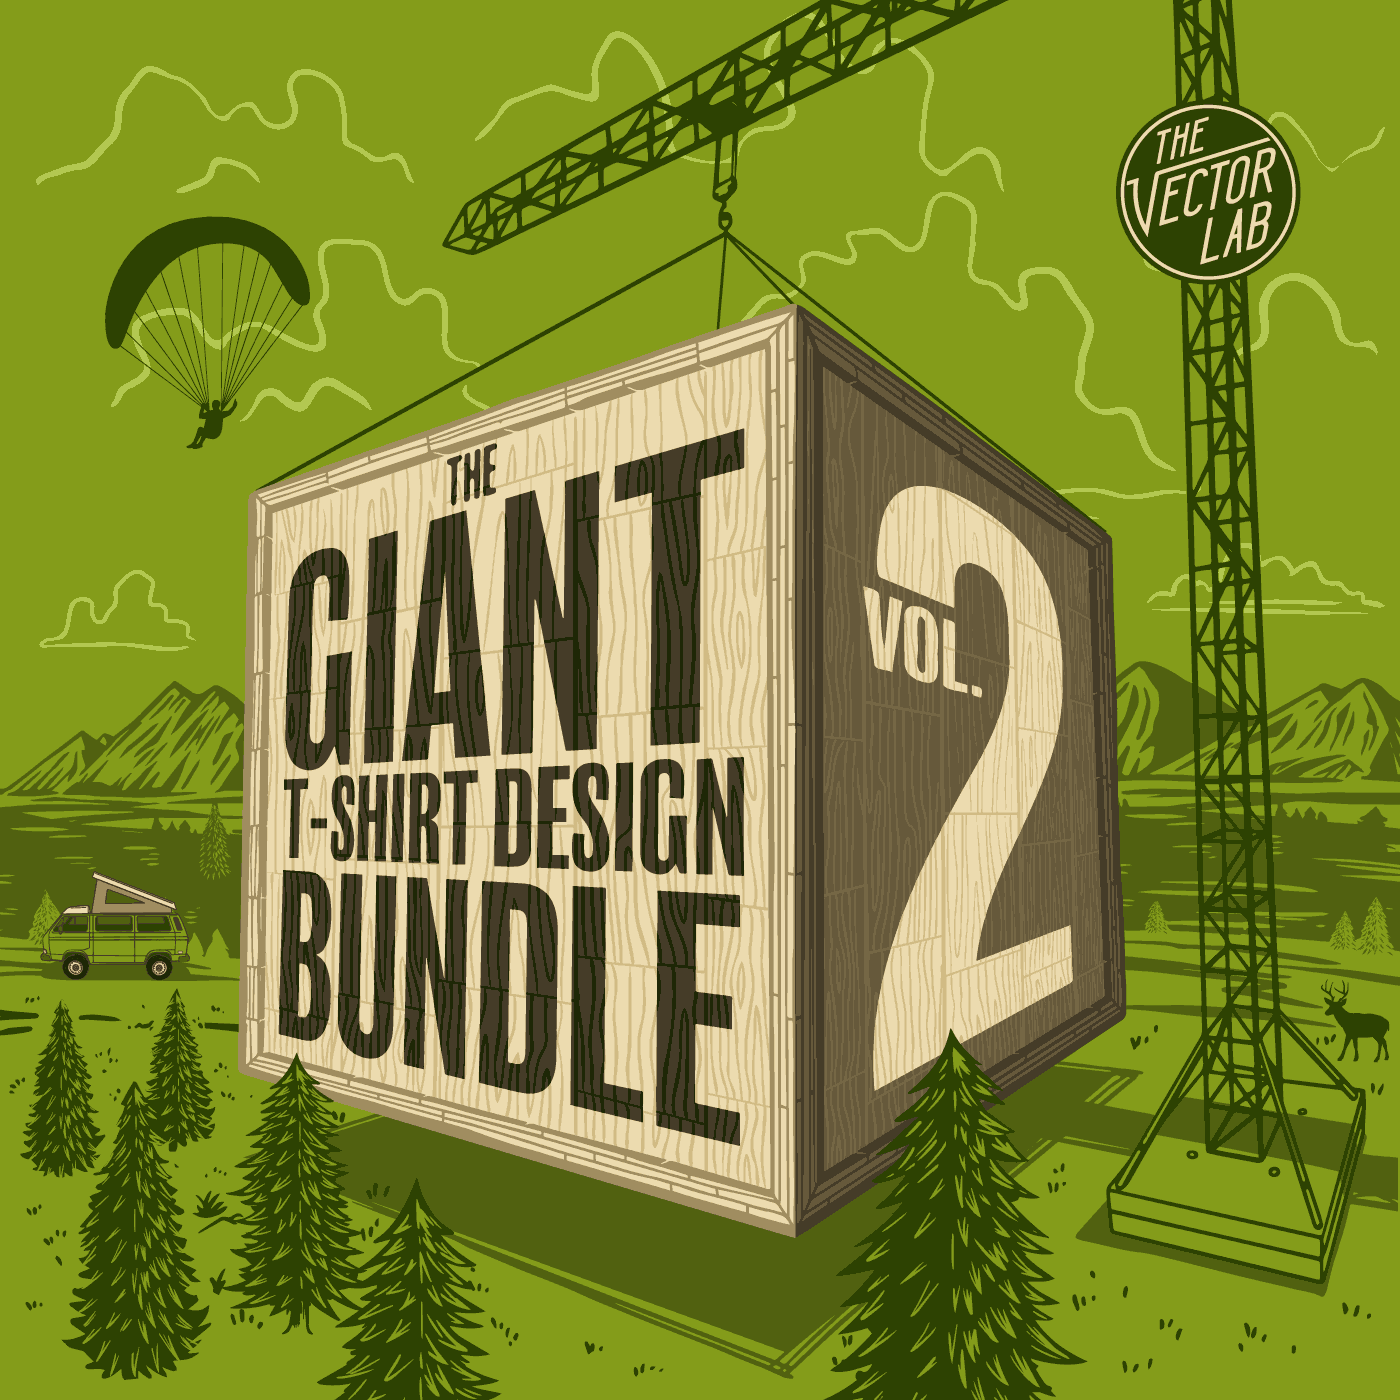 Giant Bundle Vol. 2